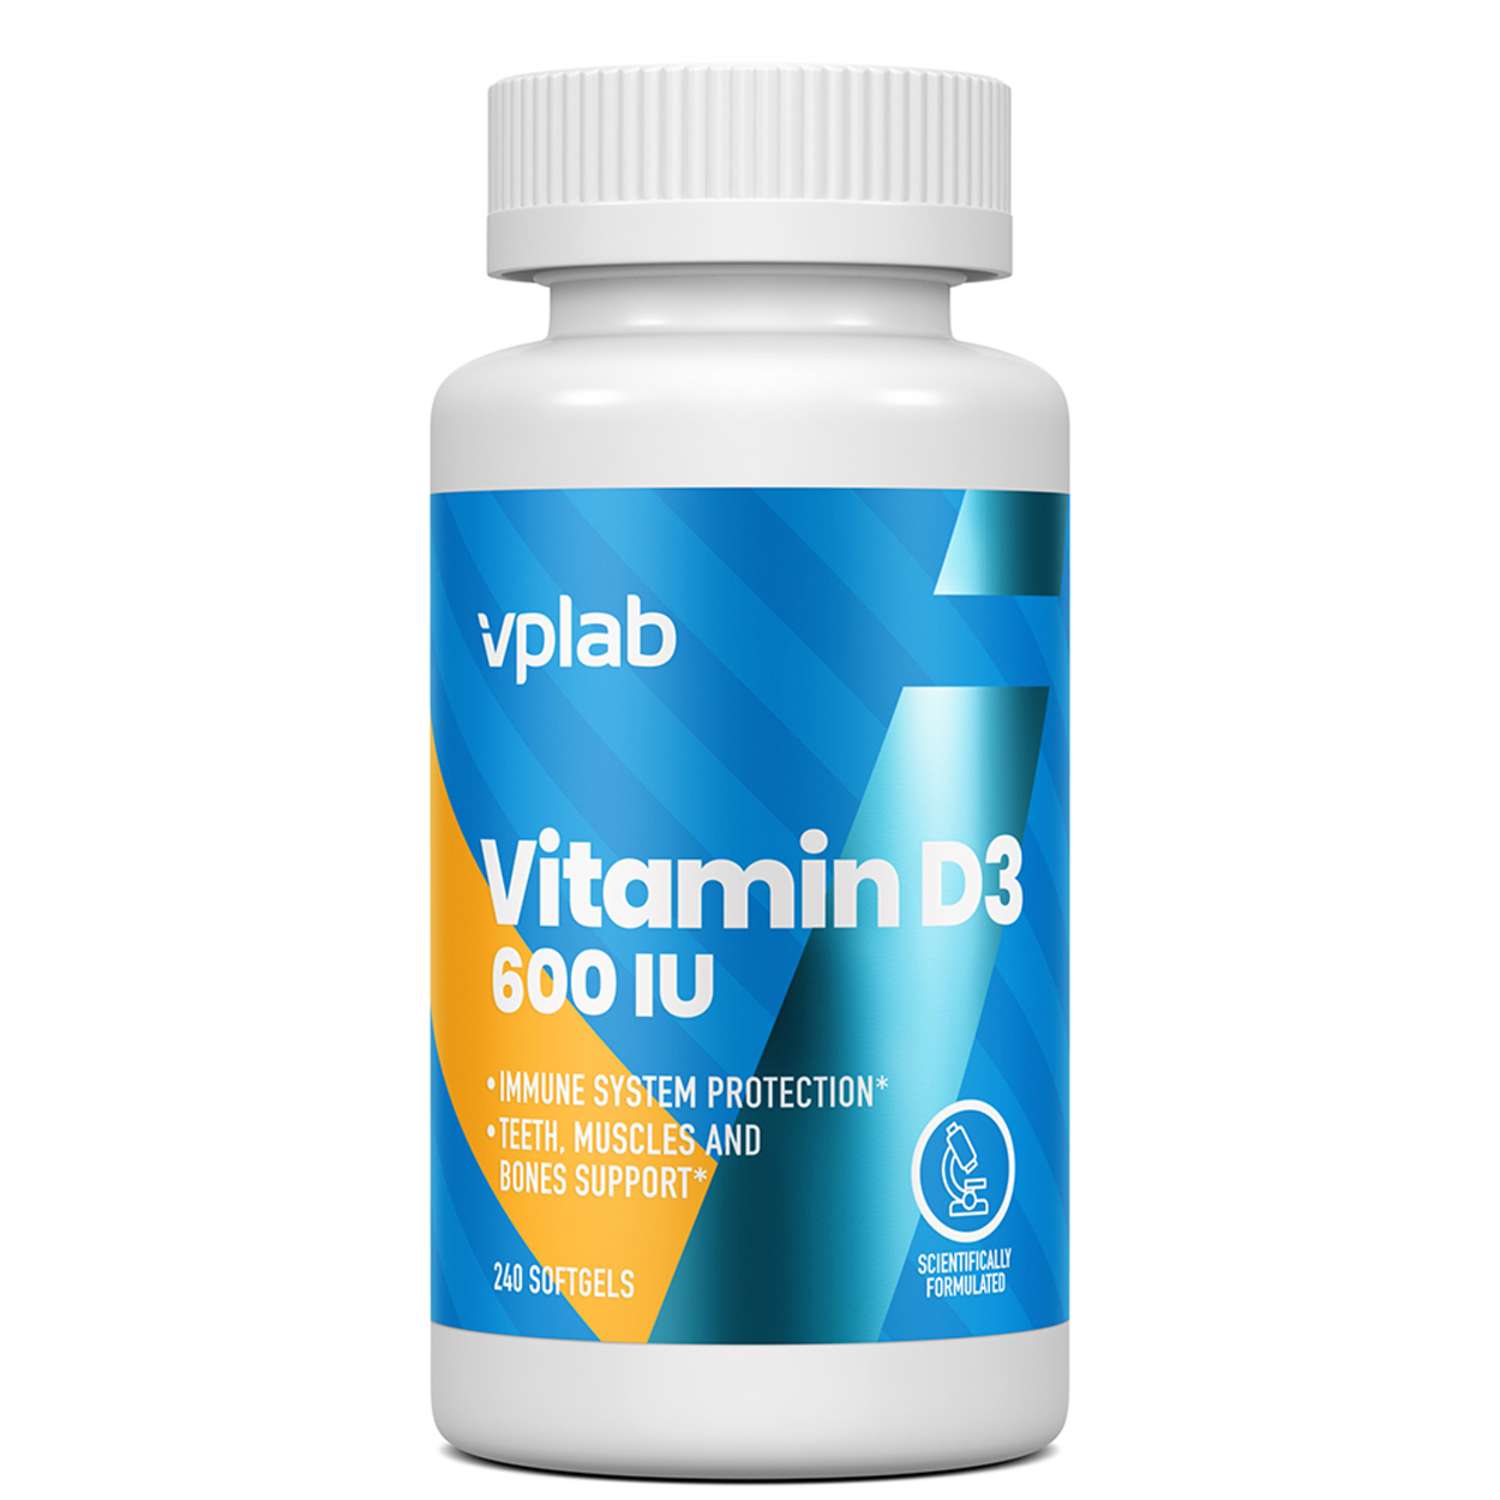 Биологически активная добавка VPLAB Vitamin D3 600 IU 240таблеток - фото 1